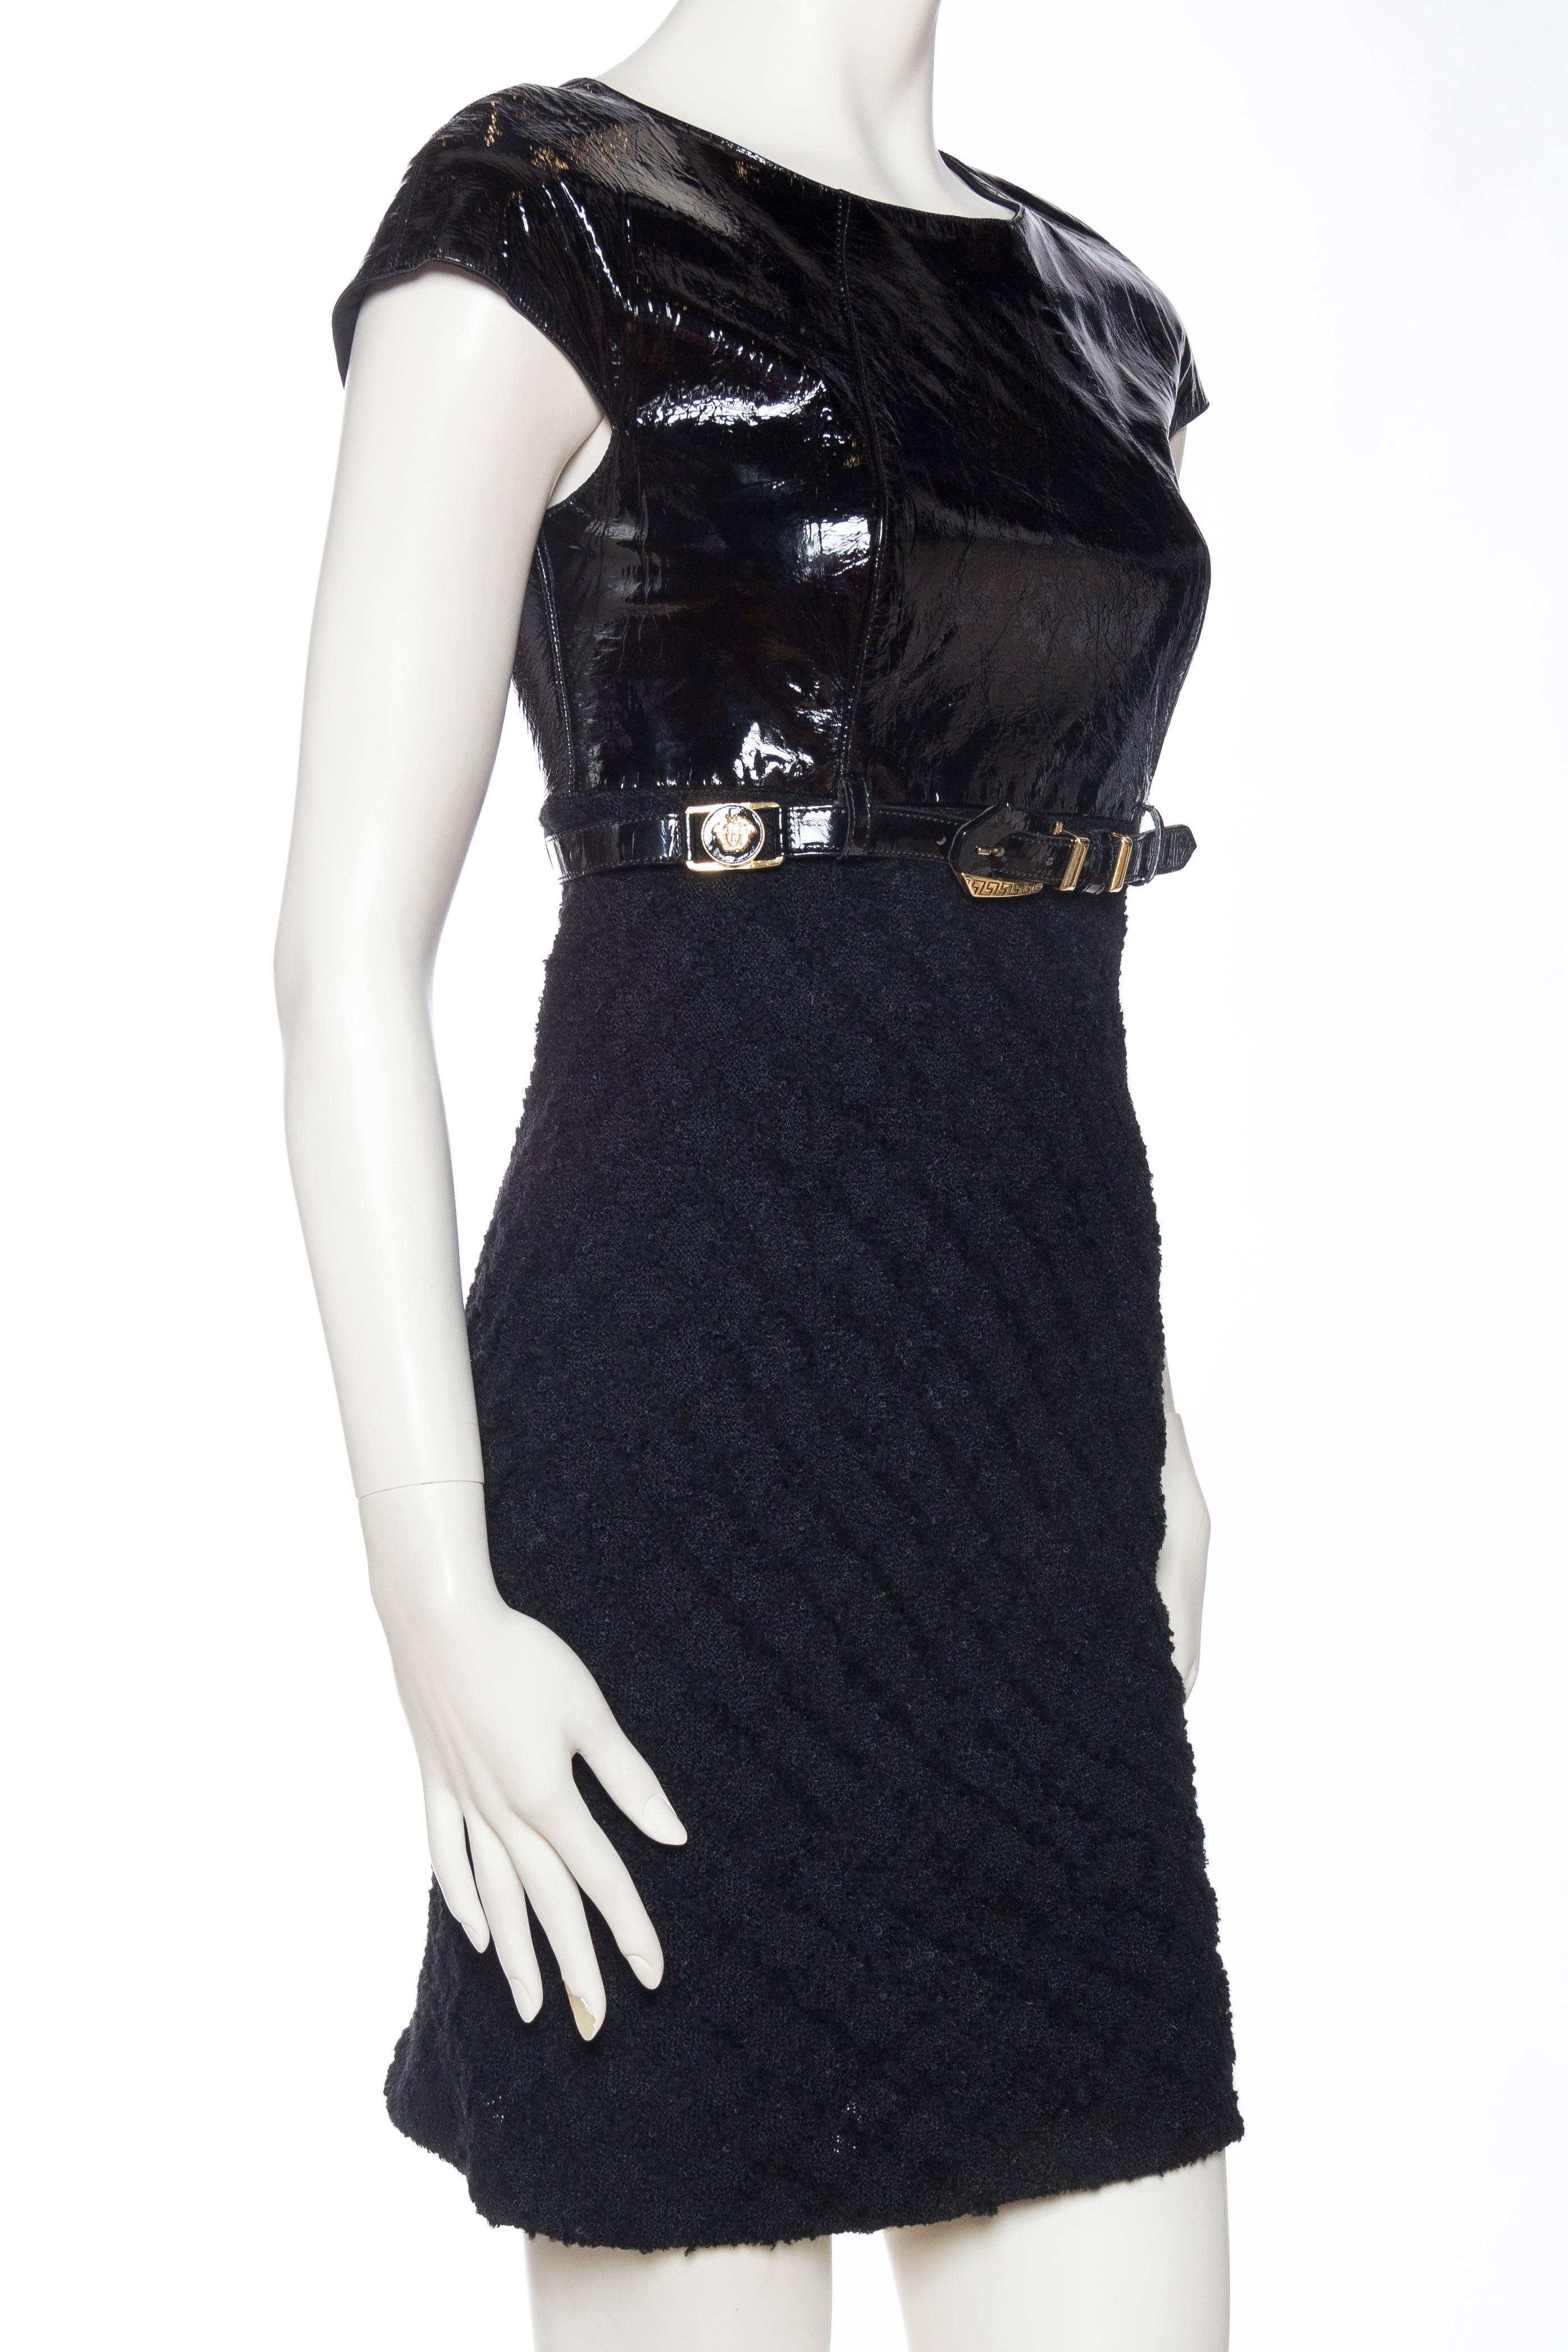 versace belt dress 1992